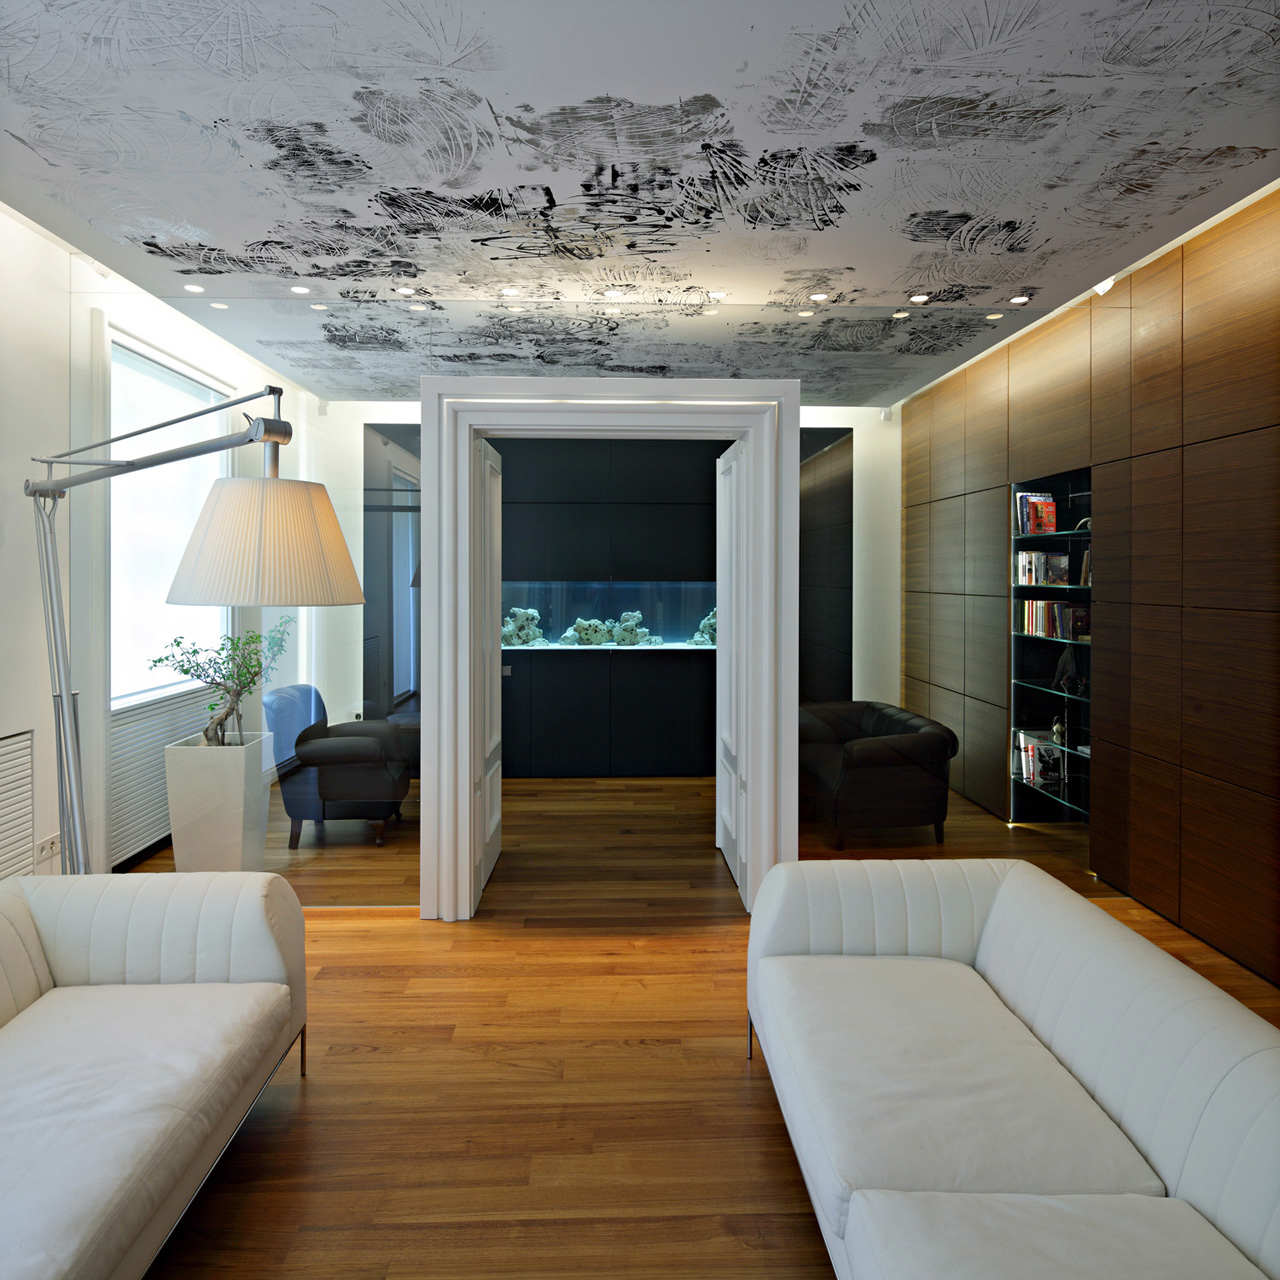 Потолок без отделки. Потолок дизайнерские решения. Интересные потолки. Дизайнерские квартиры. Необычный потолок в квартире.